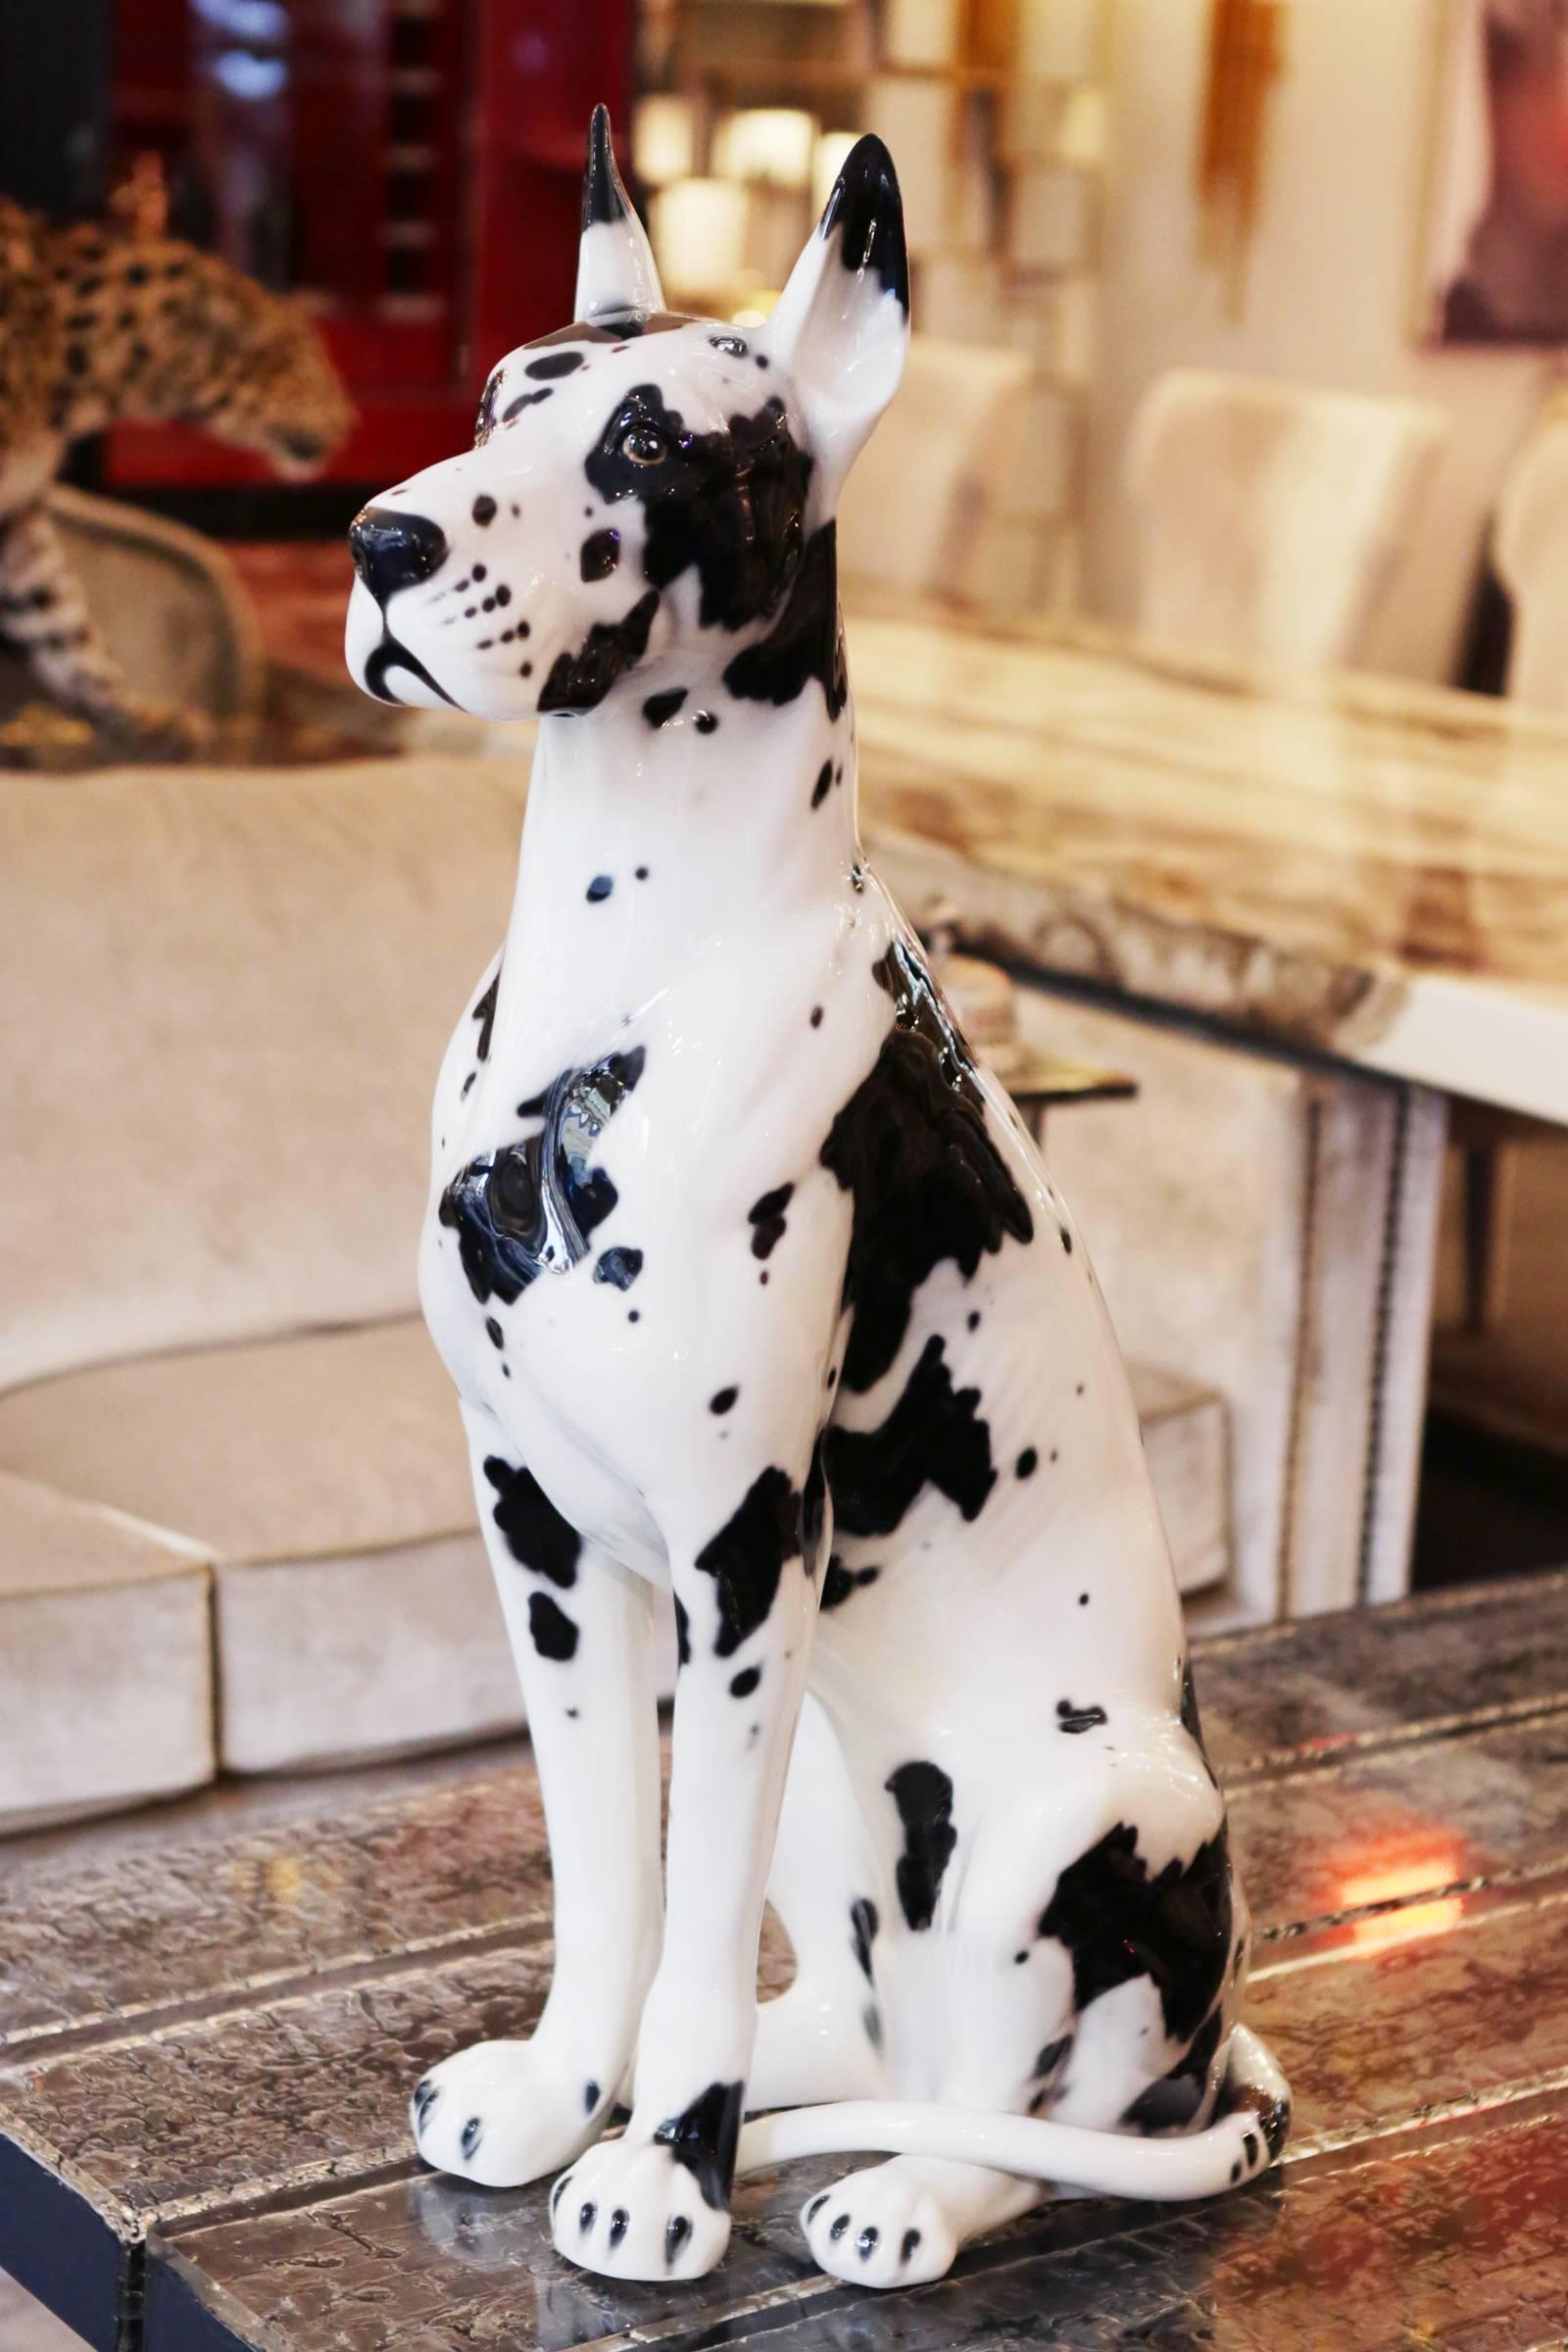 Sculpture Danish dog 
In hand painted ceramic.